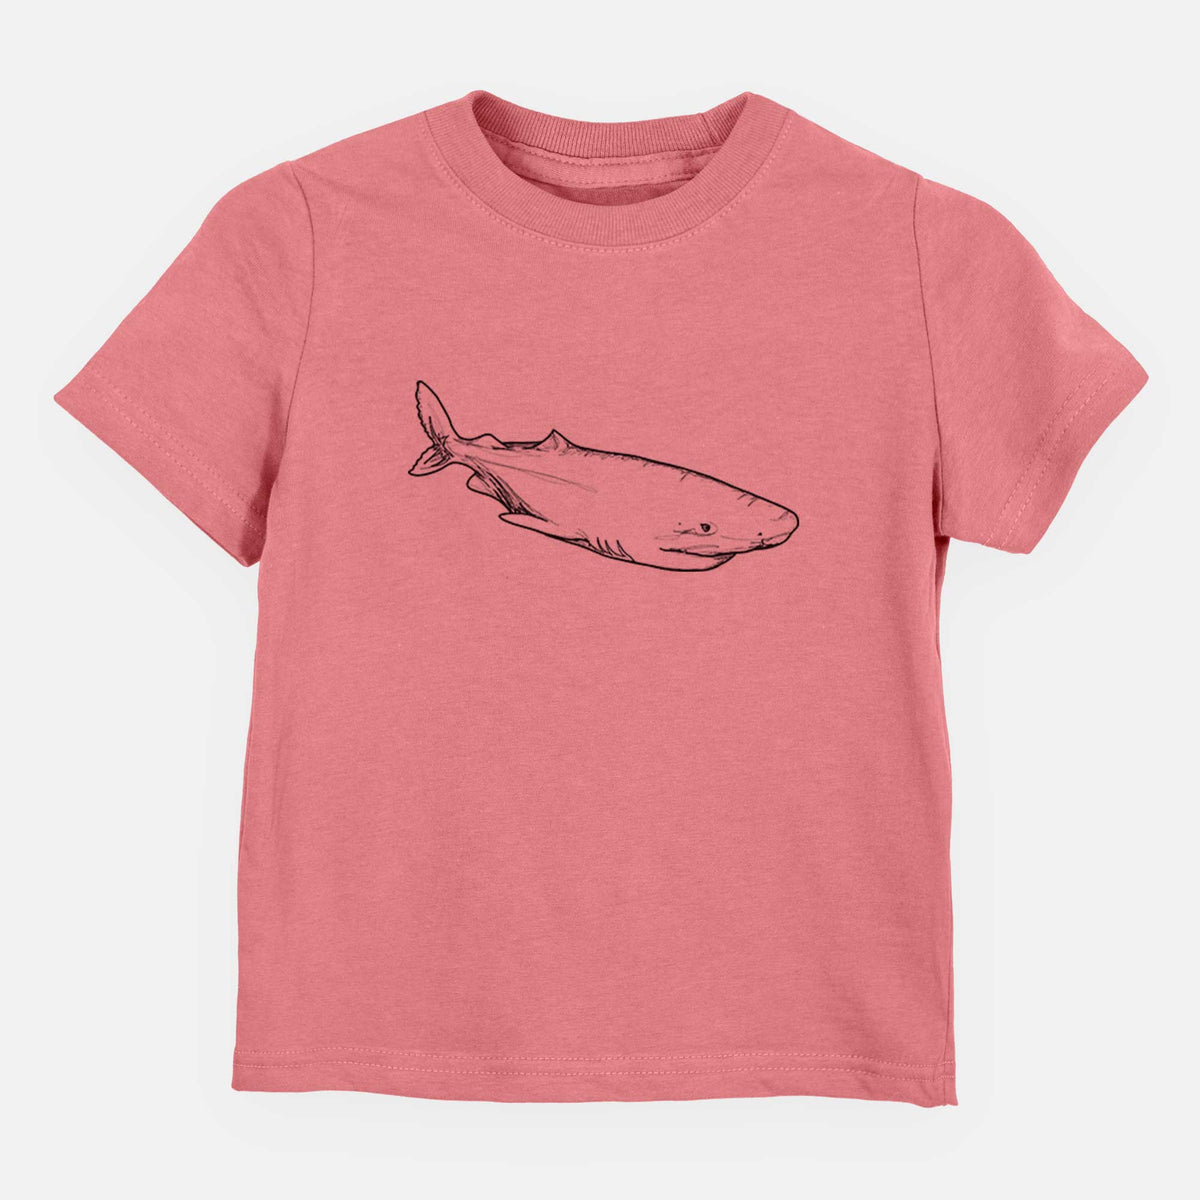 Greenland Shark - Kids Shirt